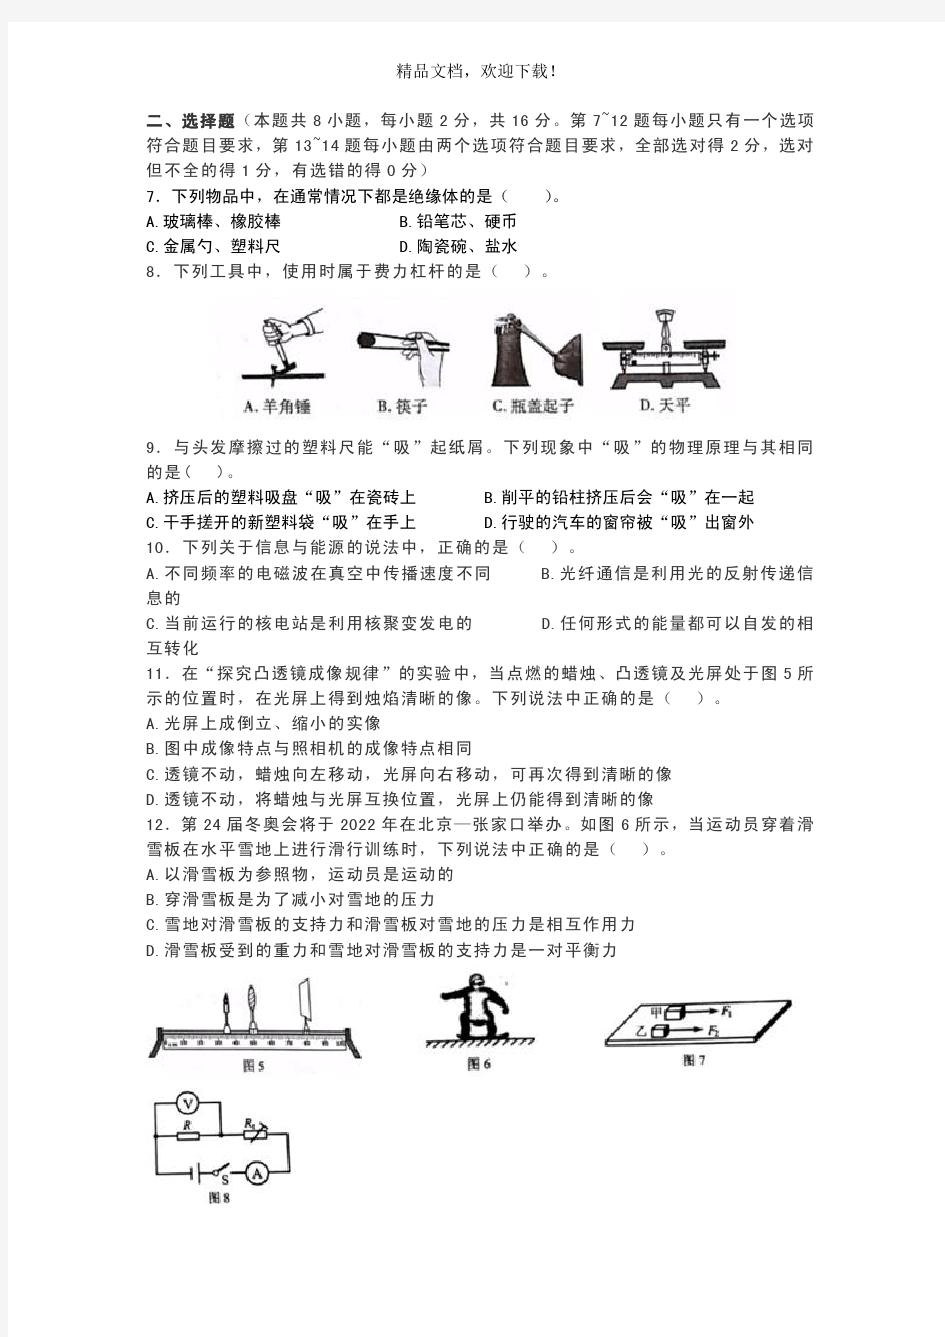 2018年河南省普通高中招生考试试卷